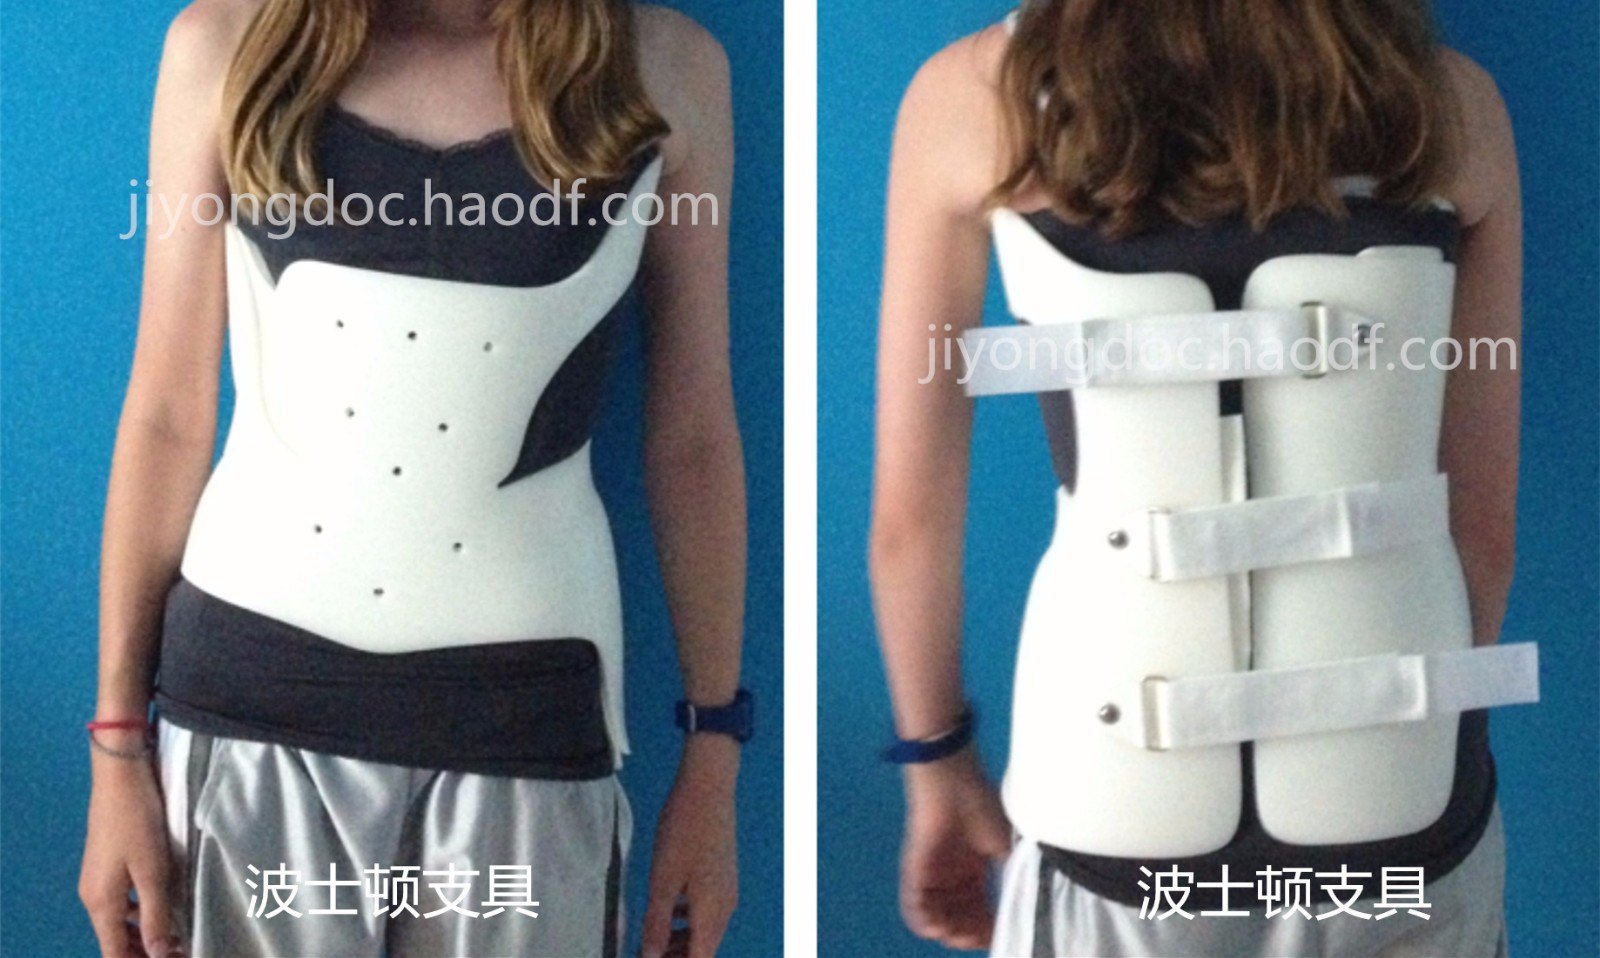 脊柱矫正防止驼背含胸侧弯矫型支架3d可调脊椎弯曲矫形支具-阿里巴巴